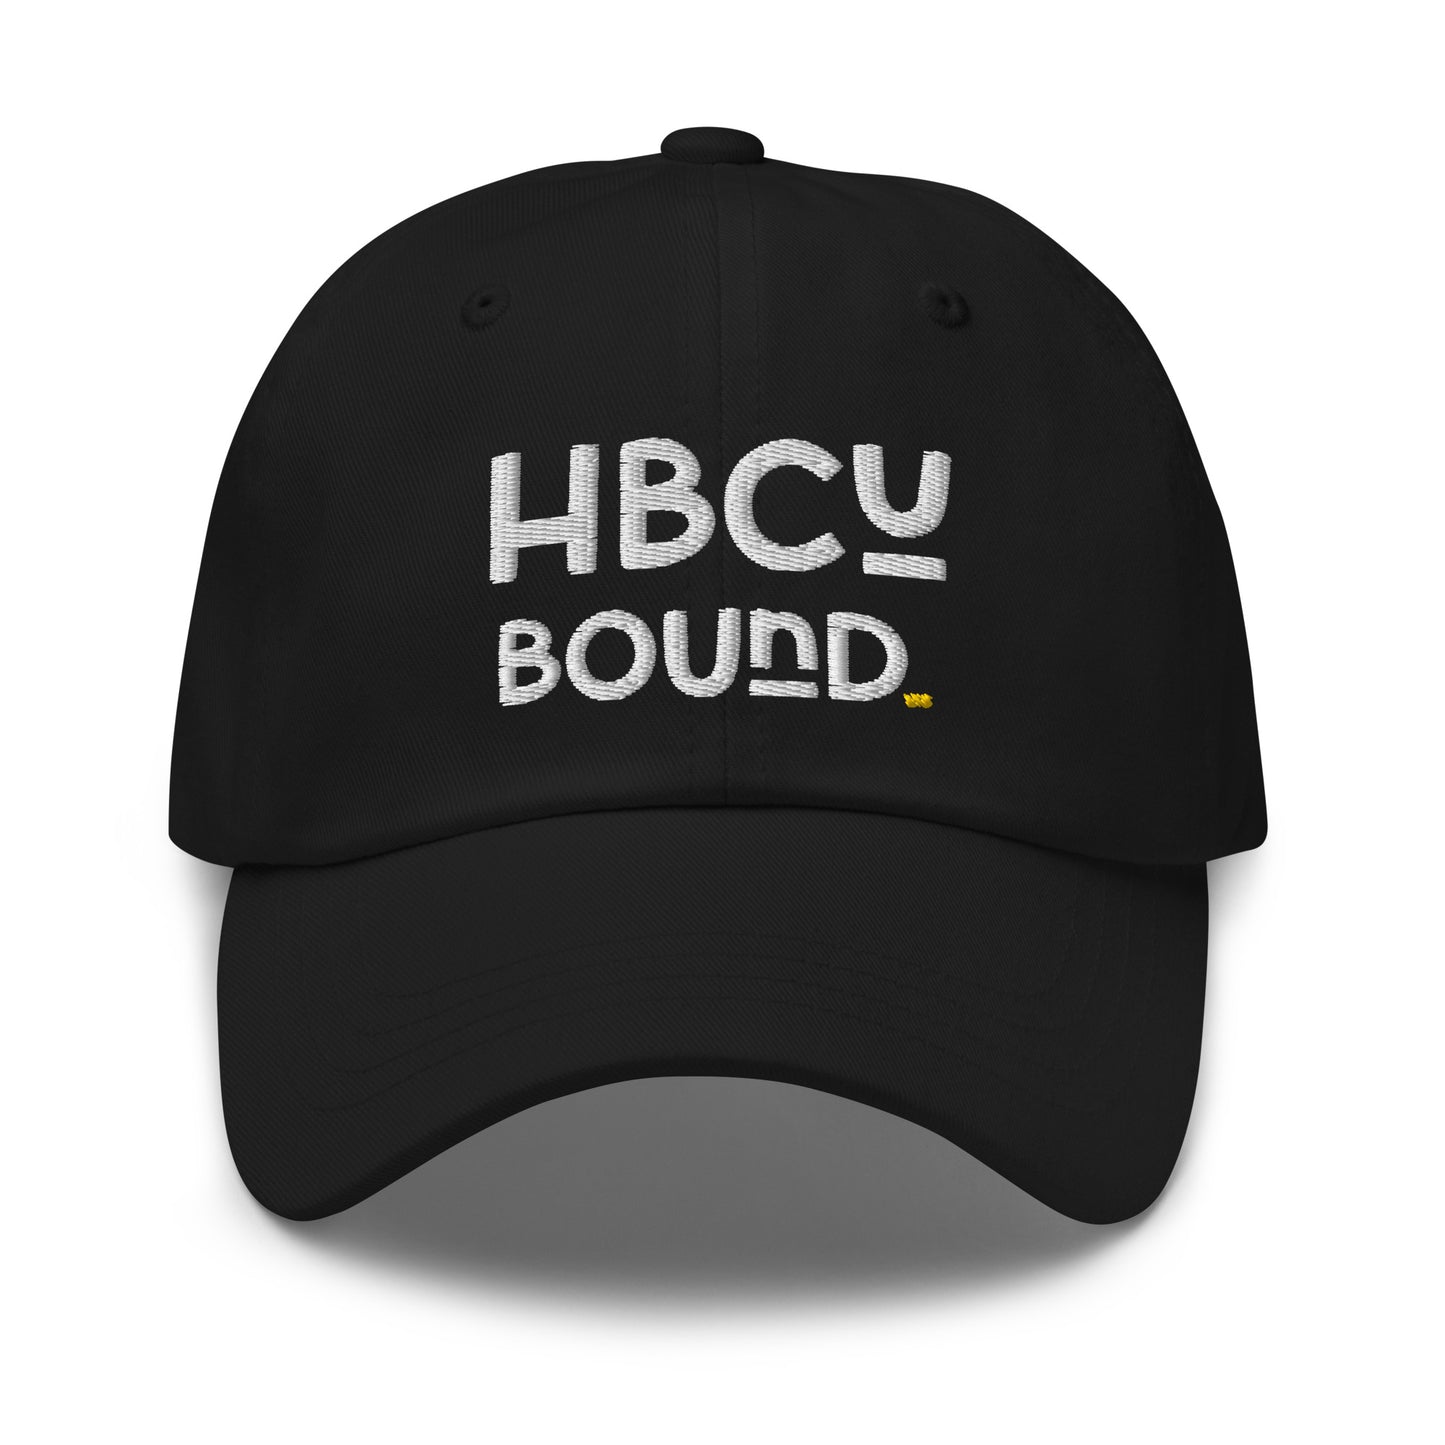 Bound - Dad Hat